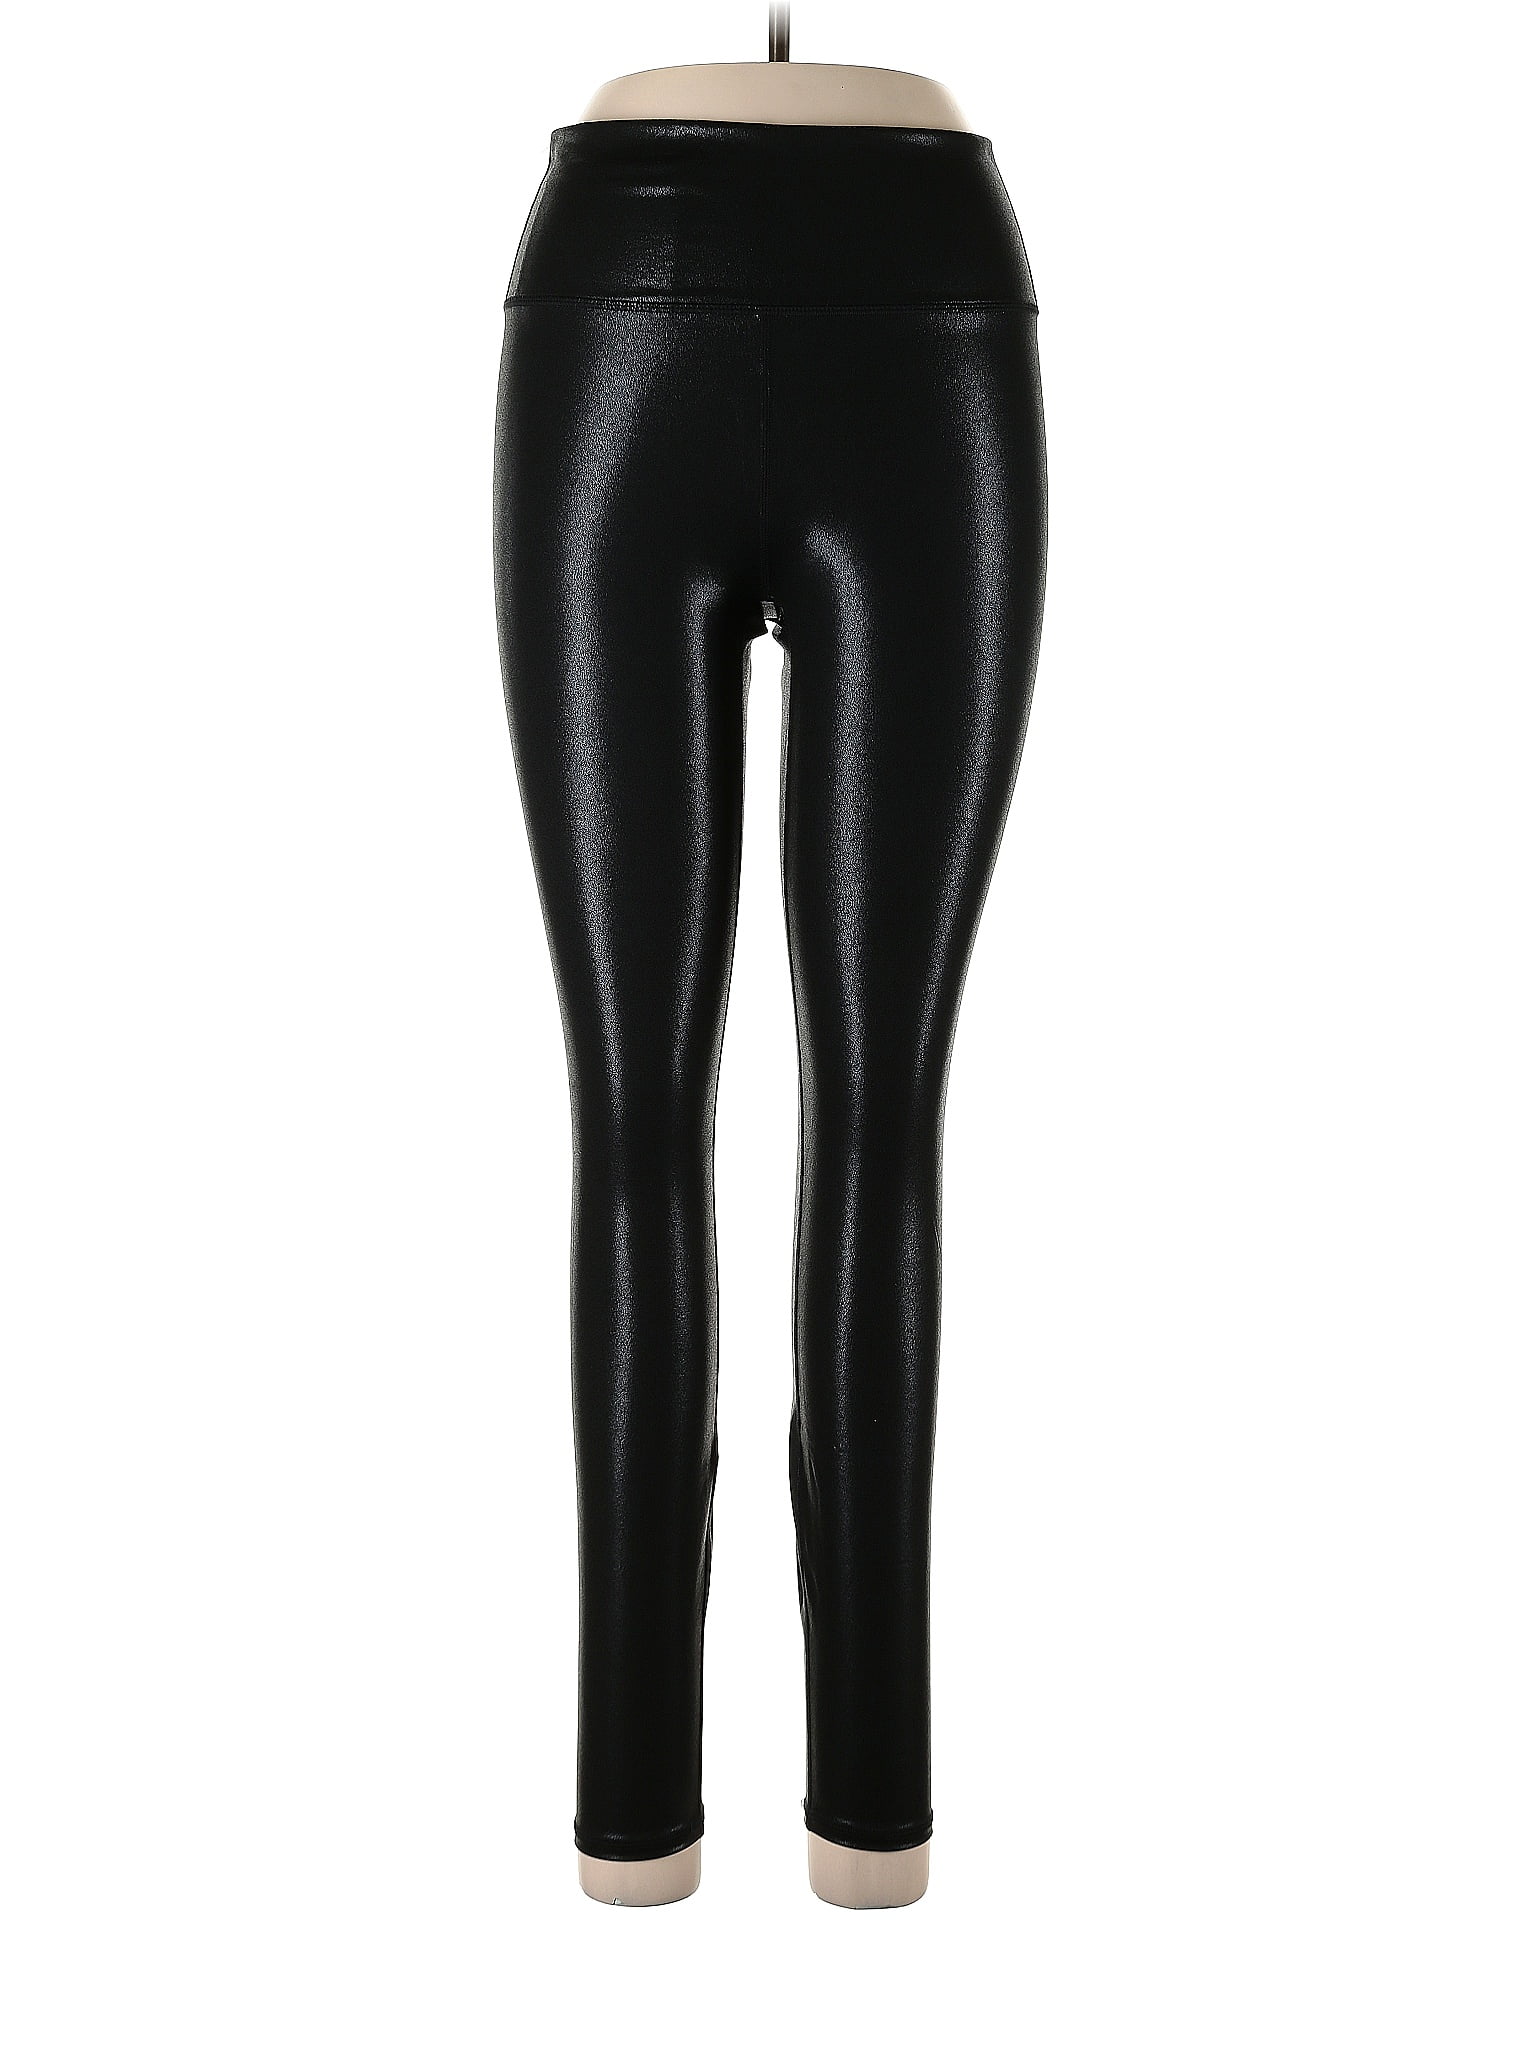 Fabletics Black Active Pants Size XL - 54% off